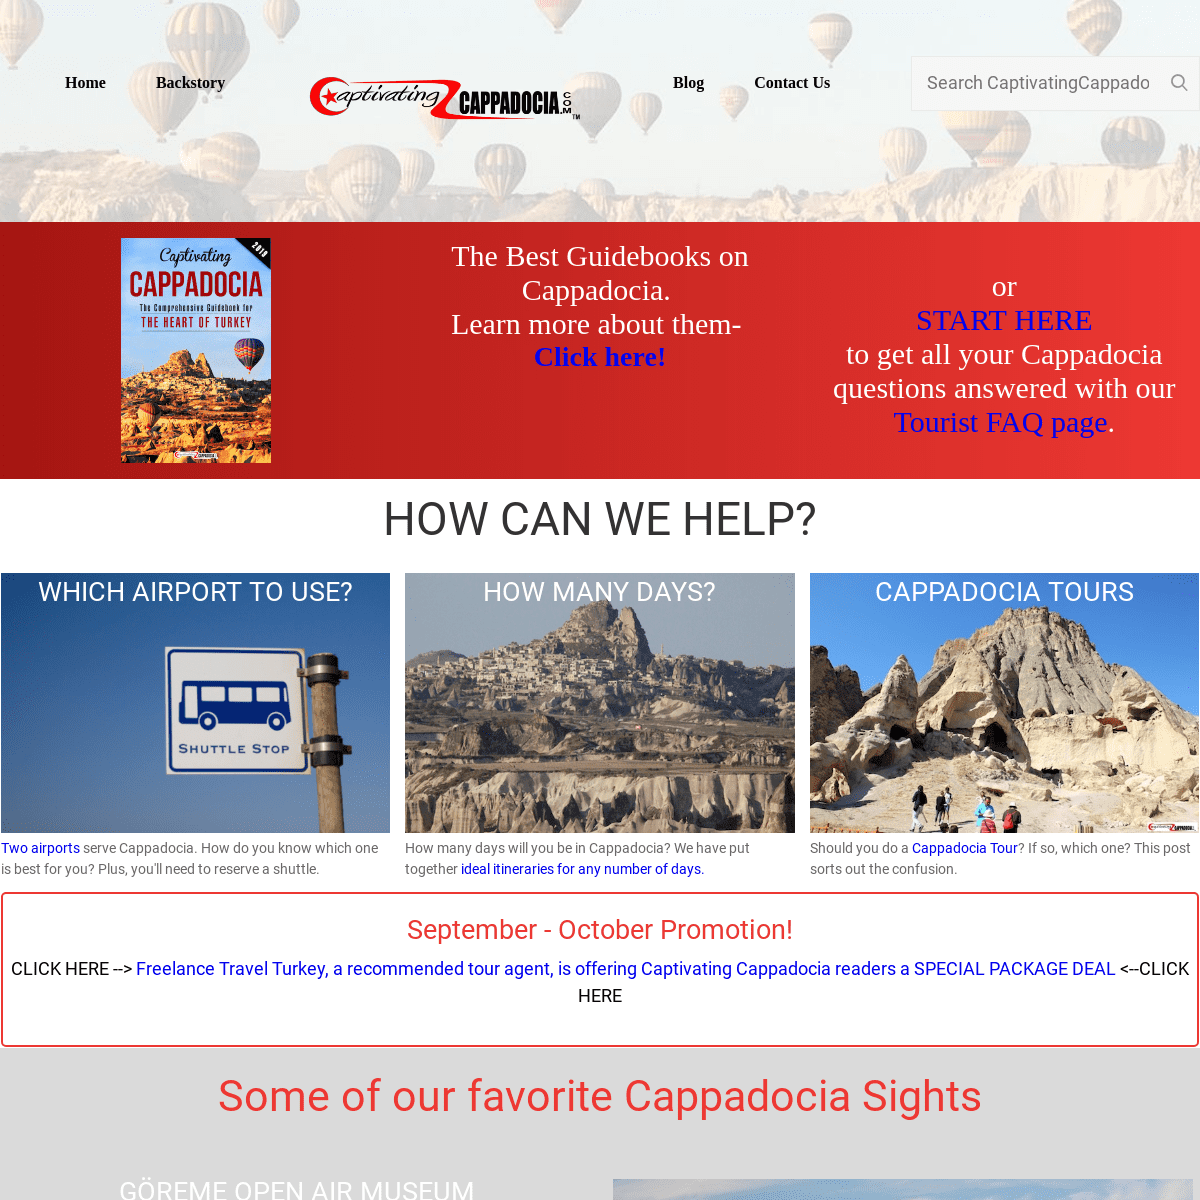 A complete backup of captivatingcappadocia.com